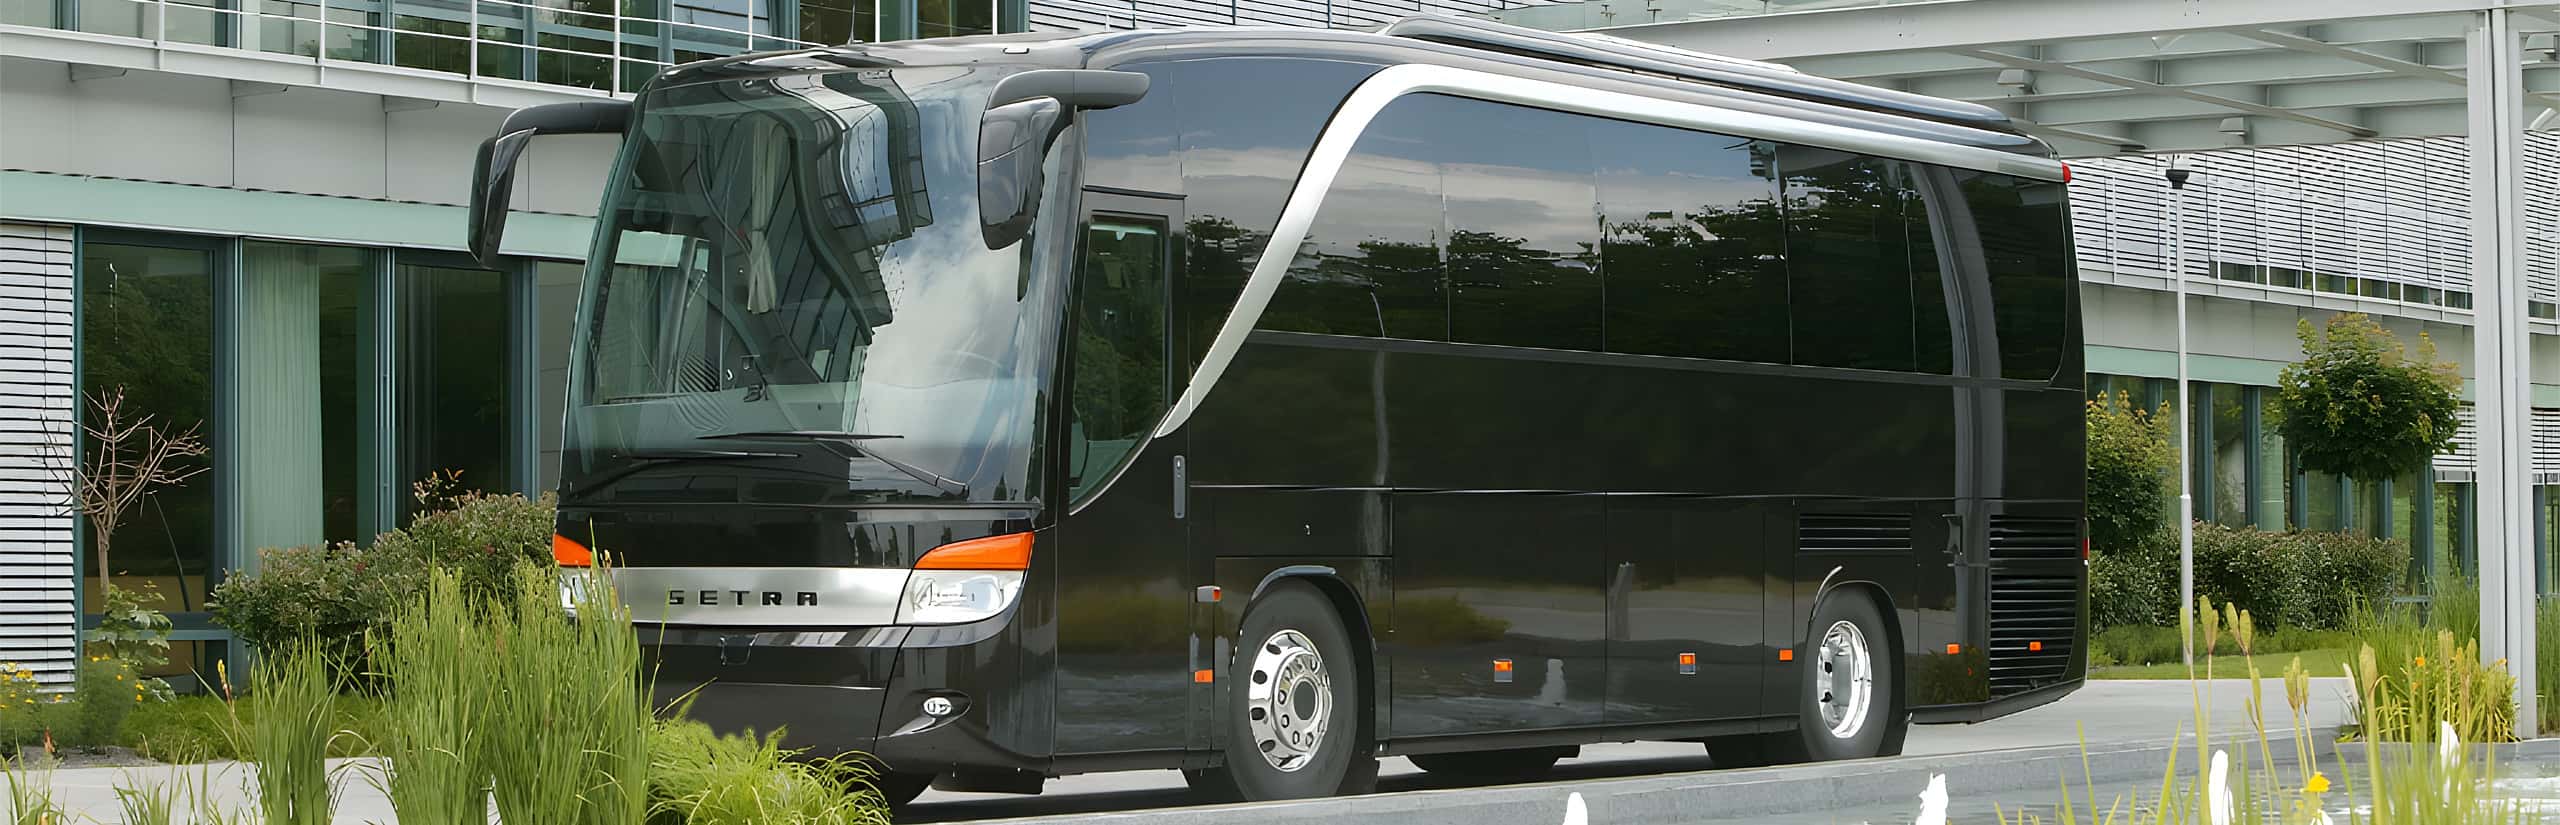 Vipbus – Luxusbus – Vipliner – Konferenzbus mieten in Frankfurt